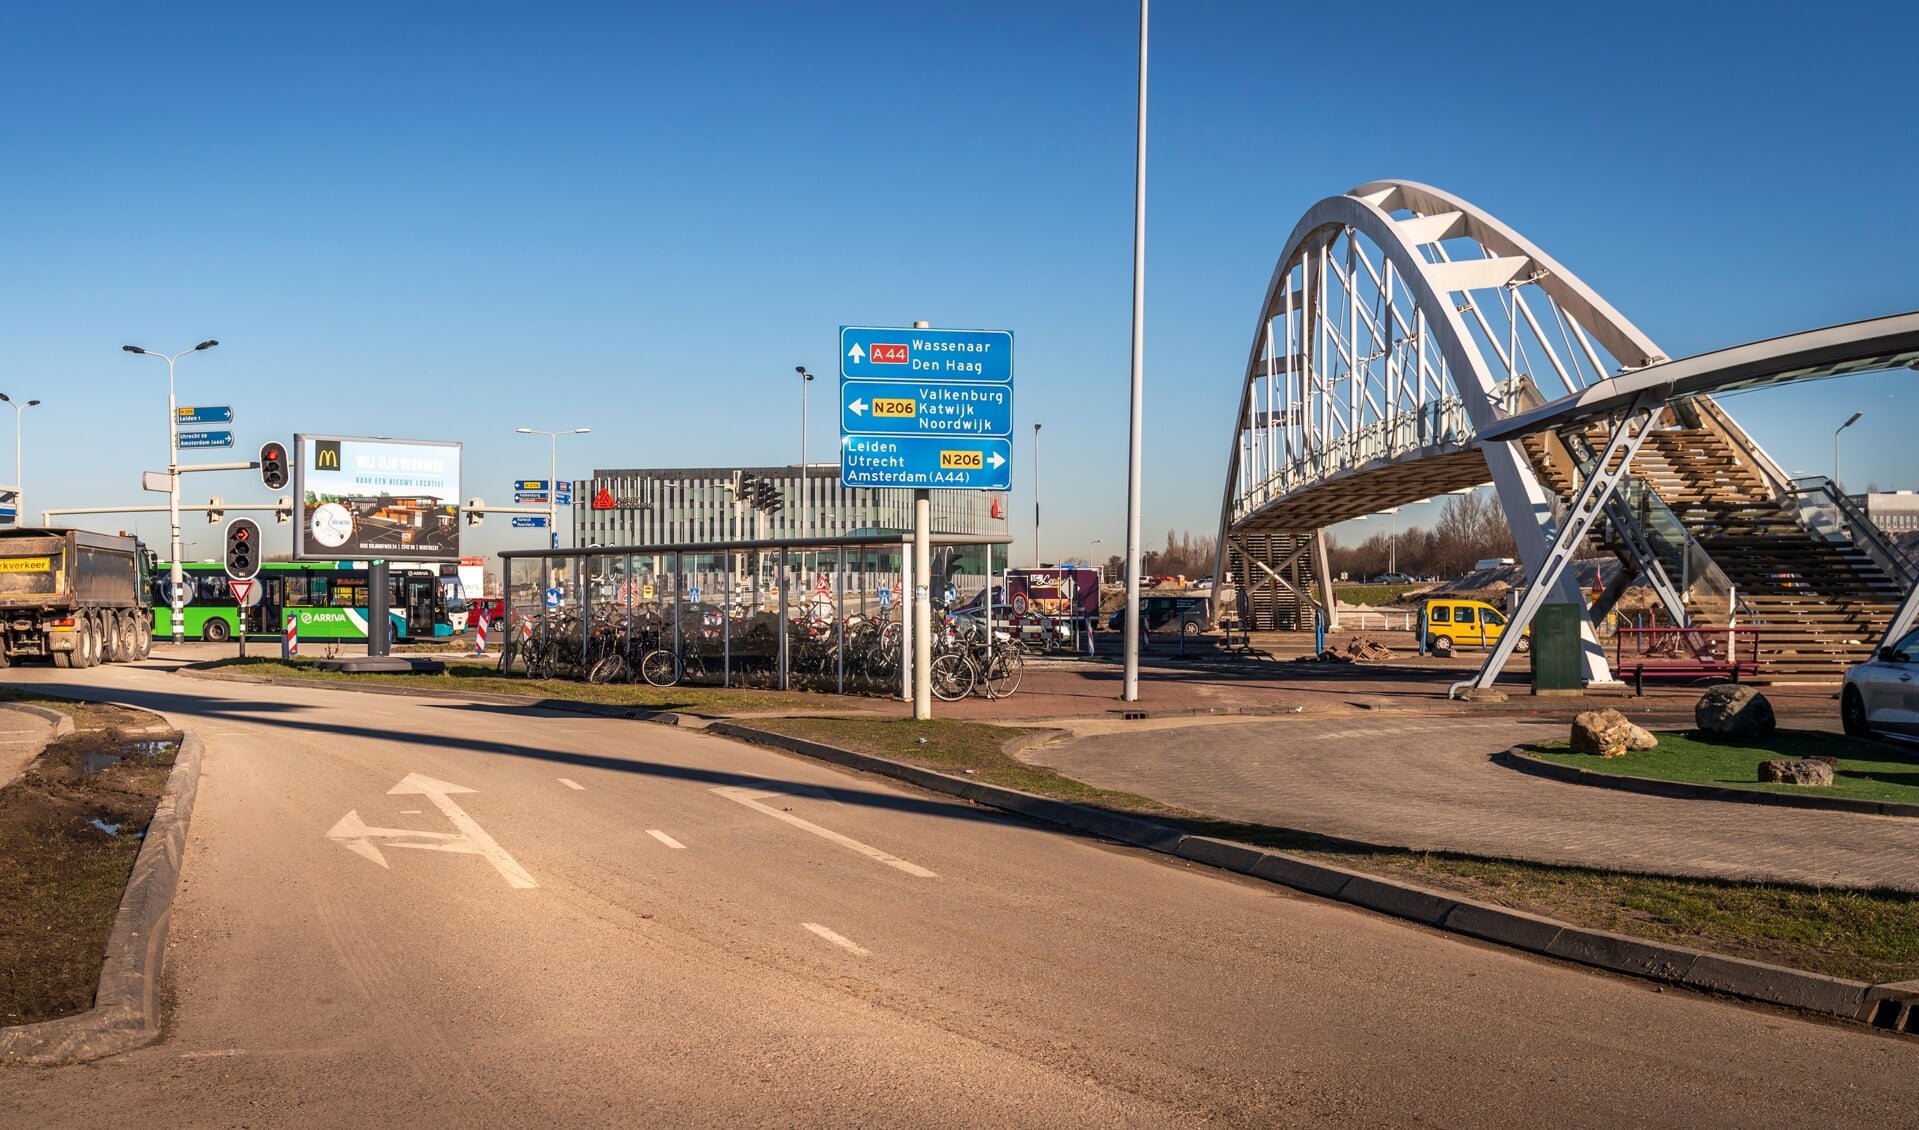 Het Transferium verhuist per 17 maart. De karakteristieke brug bij de A44 wordt eind maart verwijderd. Foto: Hanna Anthonysz, Comol5